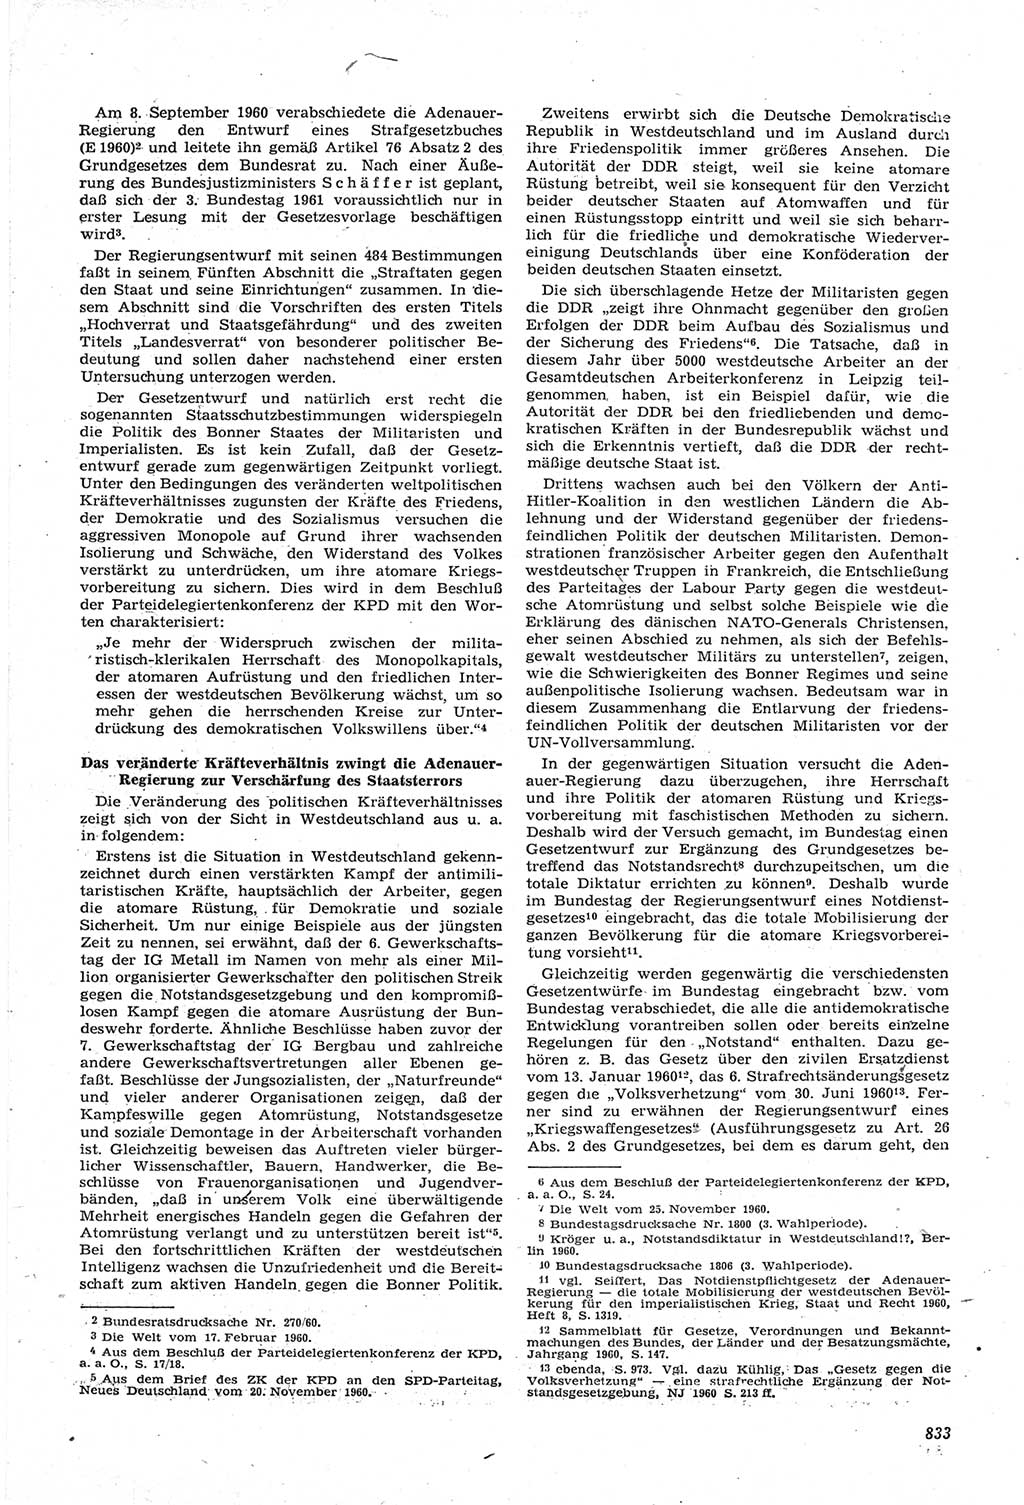 Neue Justiz (NJ), Zeitschrift für Recht und Rechtswissenschaft [Deutsche Demokratische Republik (DDR)], 14. Jahrgang 1960, Seite 833 (NJ DDR 1960, S. 833)